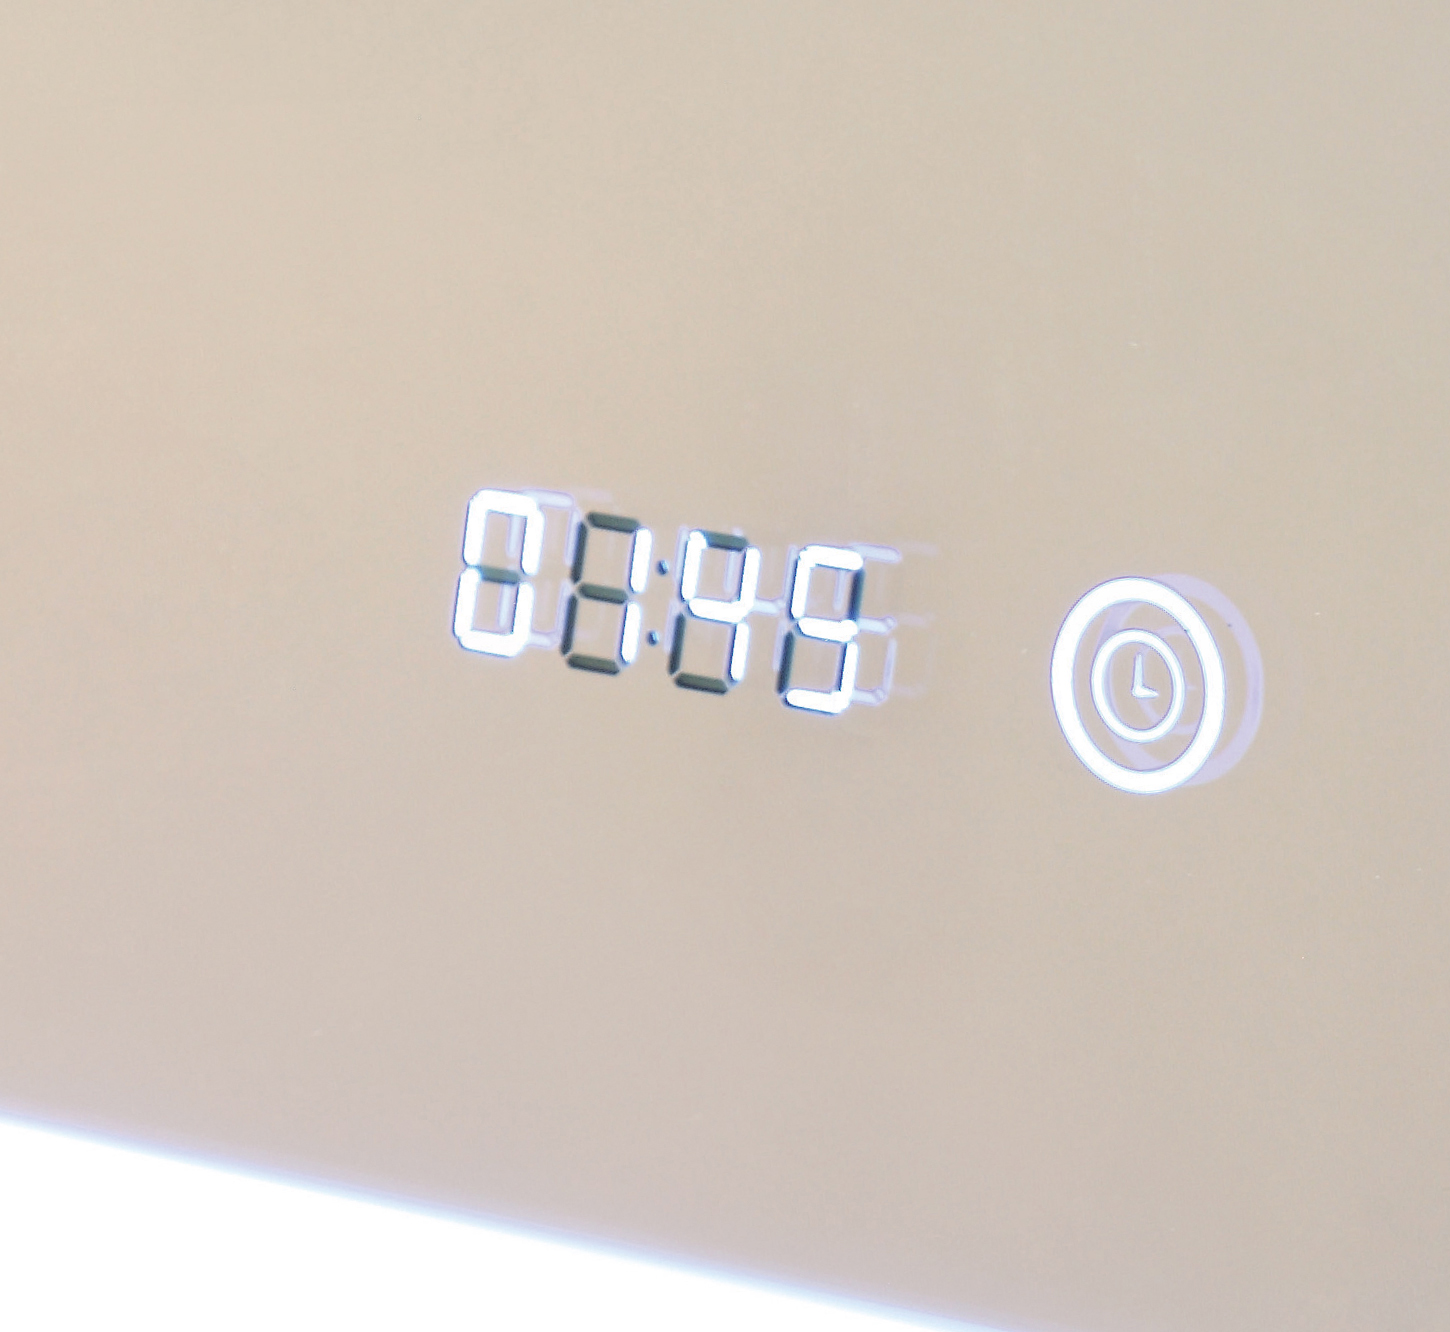 HOKO HOKO LED Badspiegel Kaltweiß mit Uhr 60x80cm Badspiegel Lichtfarbe